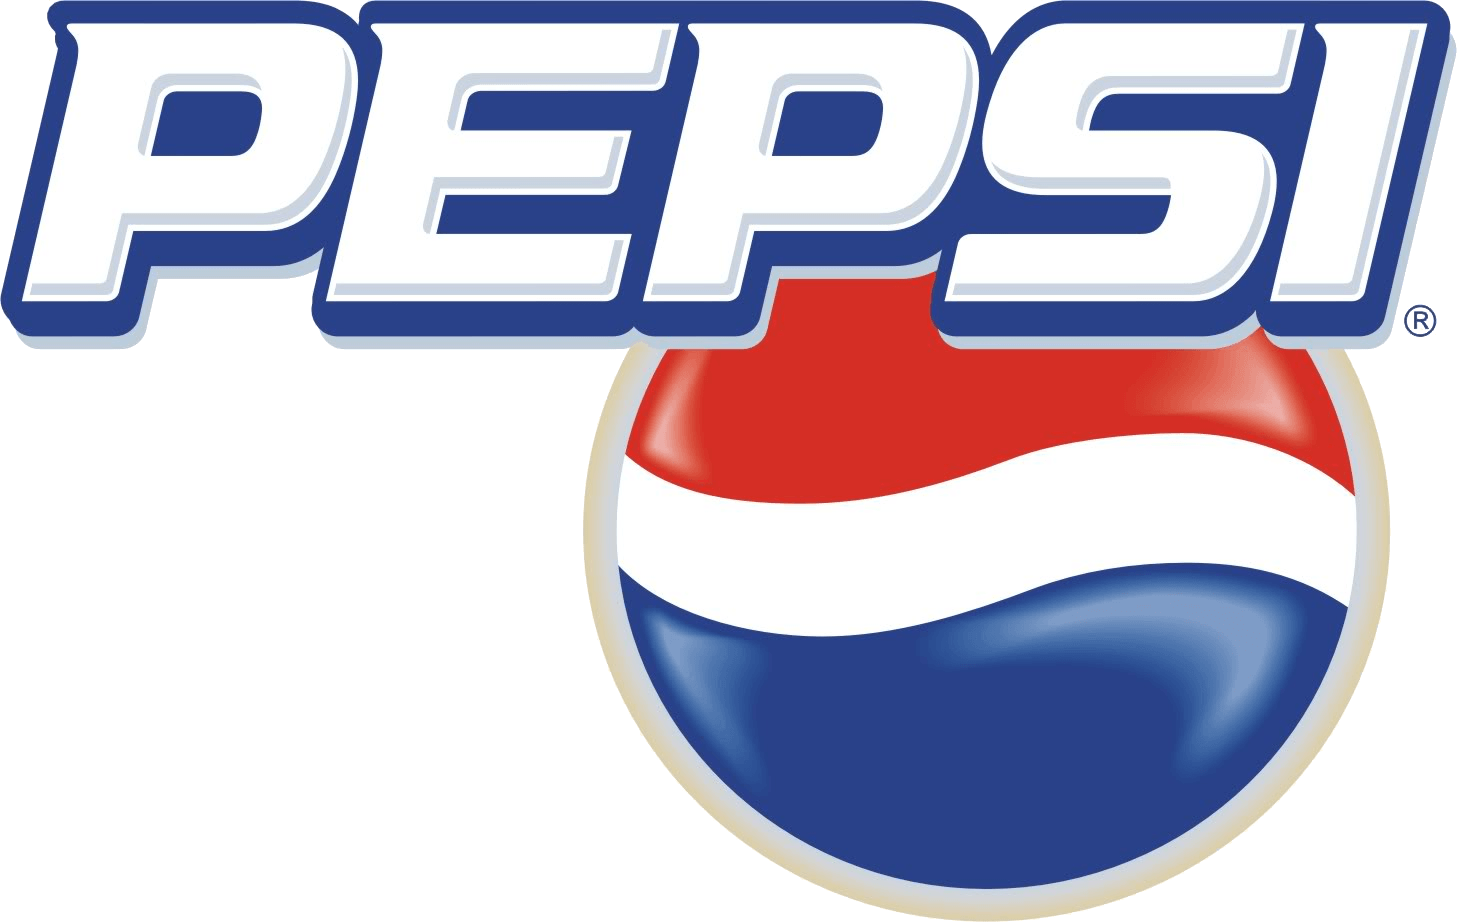 2003 Logo - Pepsi 2003 Logo Image - Free Logo Png